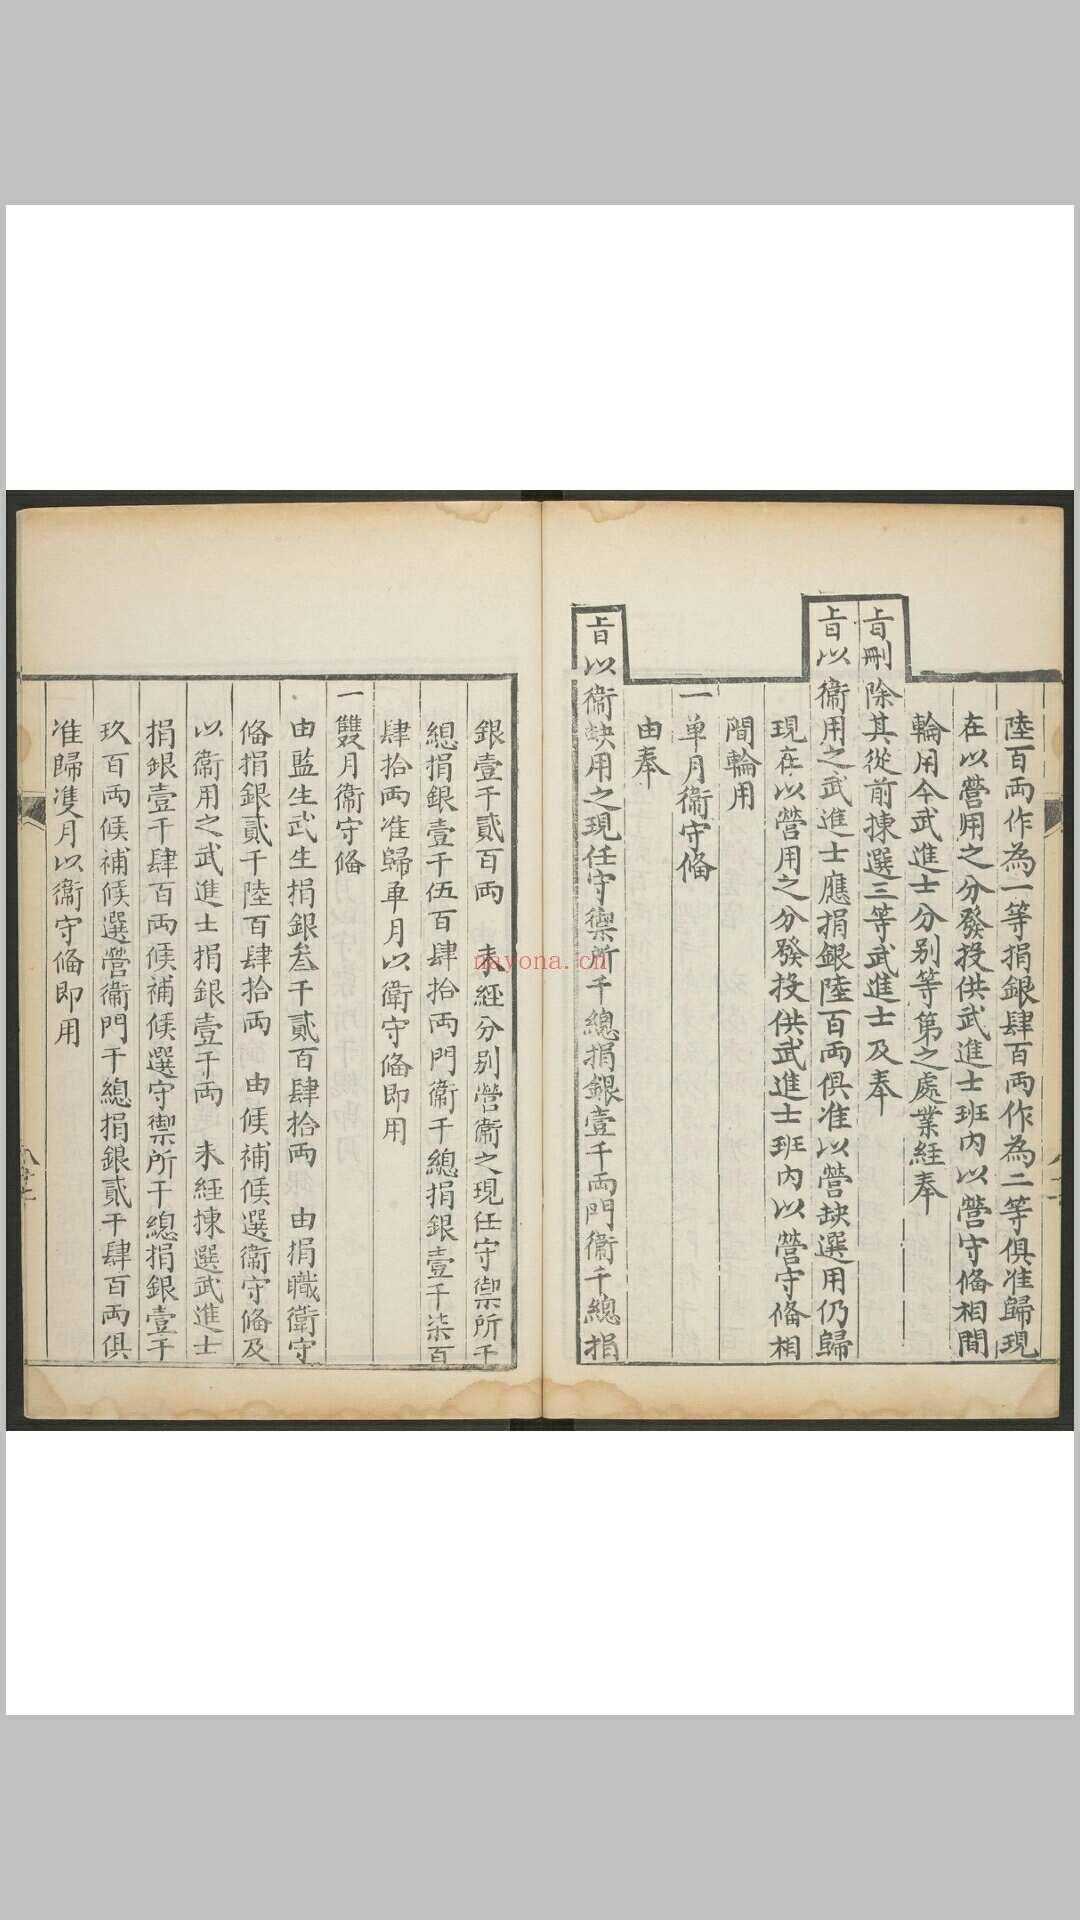 1644-1912 奏准工赈事例. 清嘉庆6年